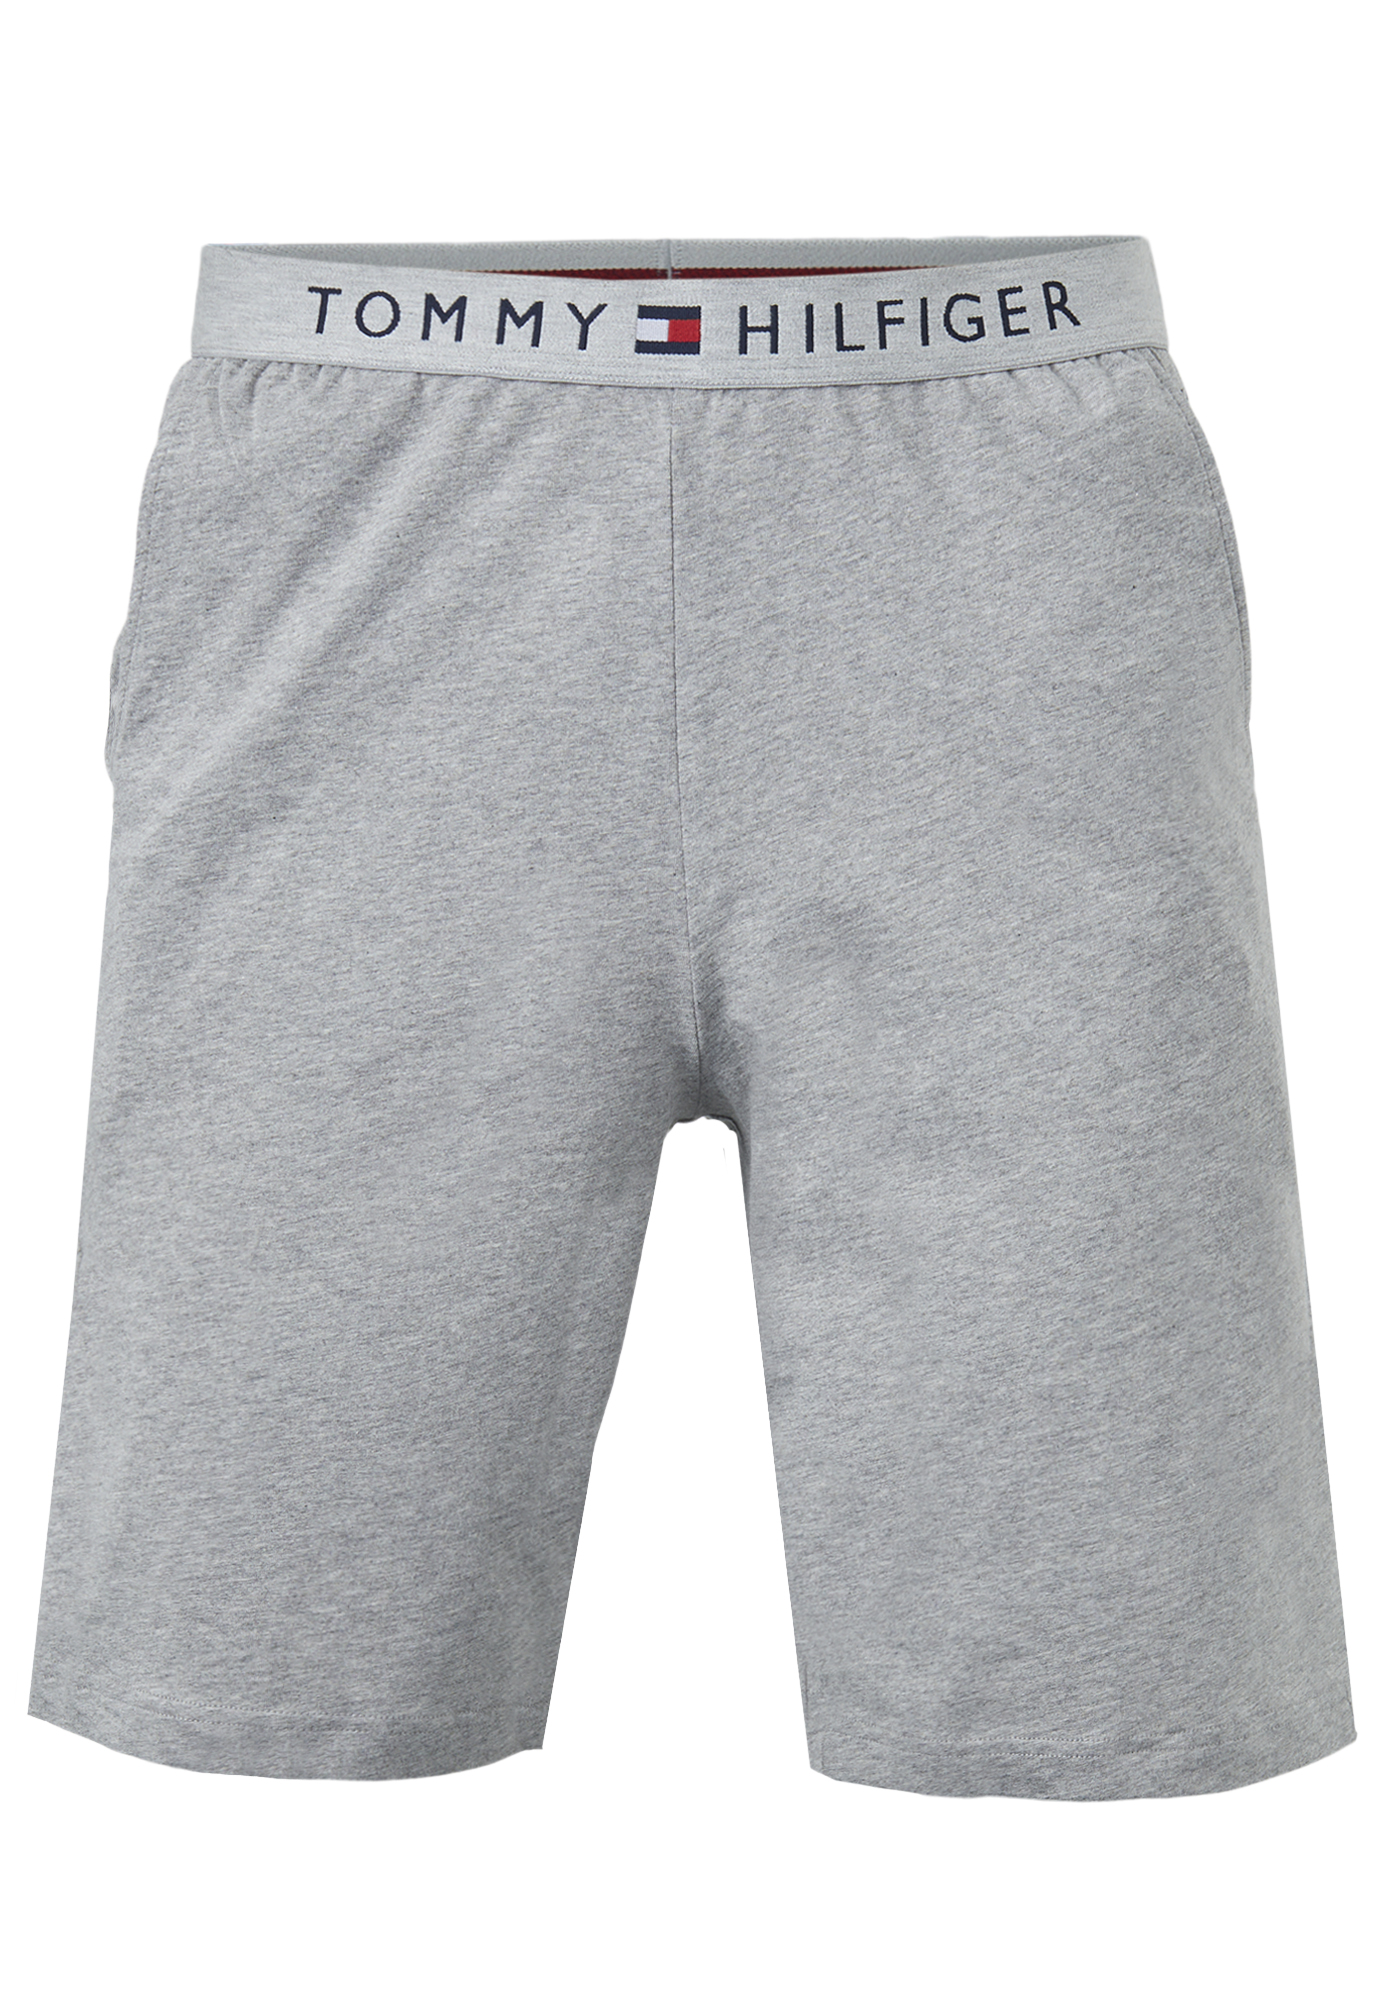 Tommy Hilfiger heren lounge short, korte broek dun, grijs